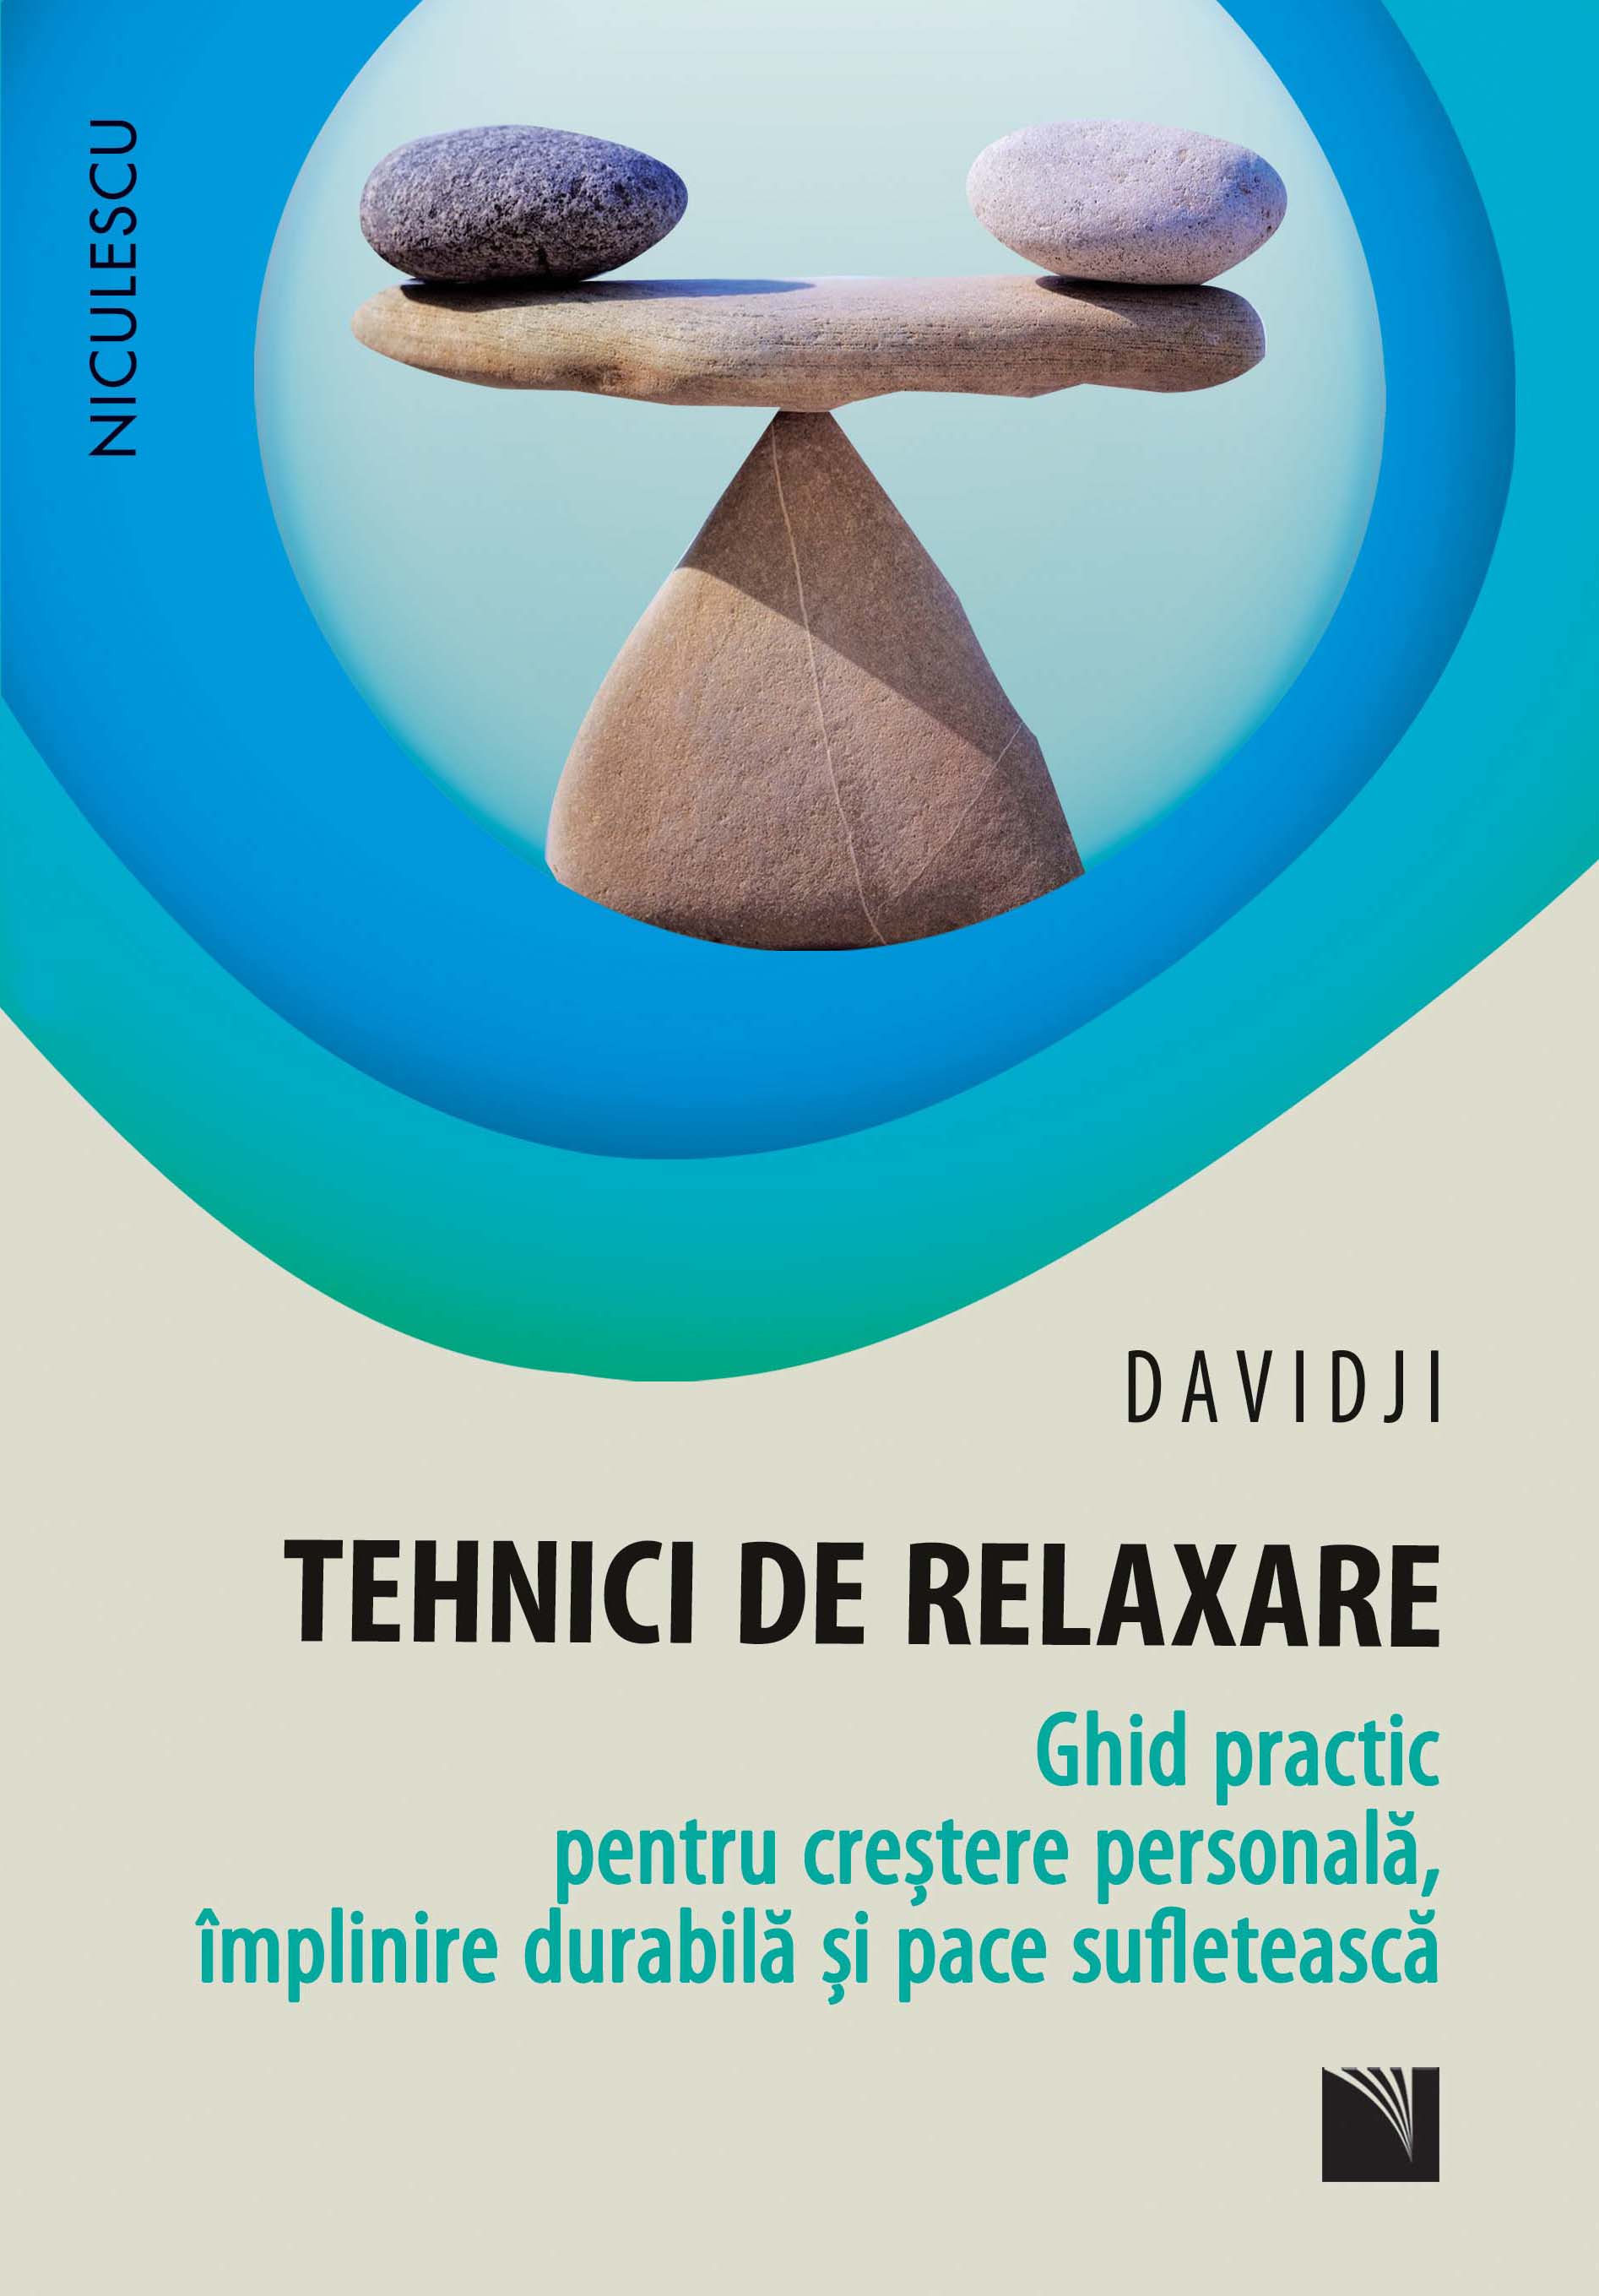 Tehnici de relaxare | Davidji De La Carturesti Carti Dezvoltare Personala 2023-06-02